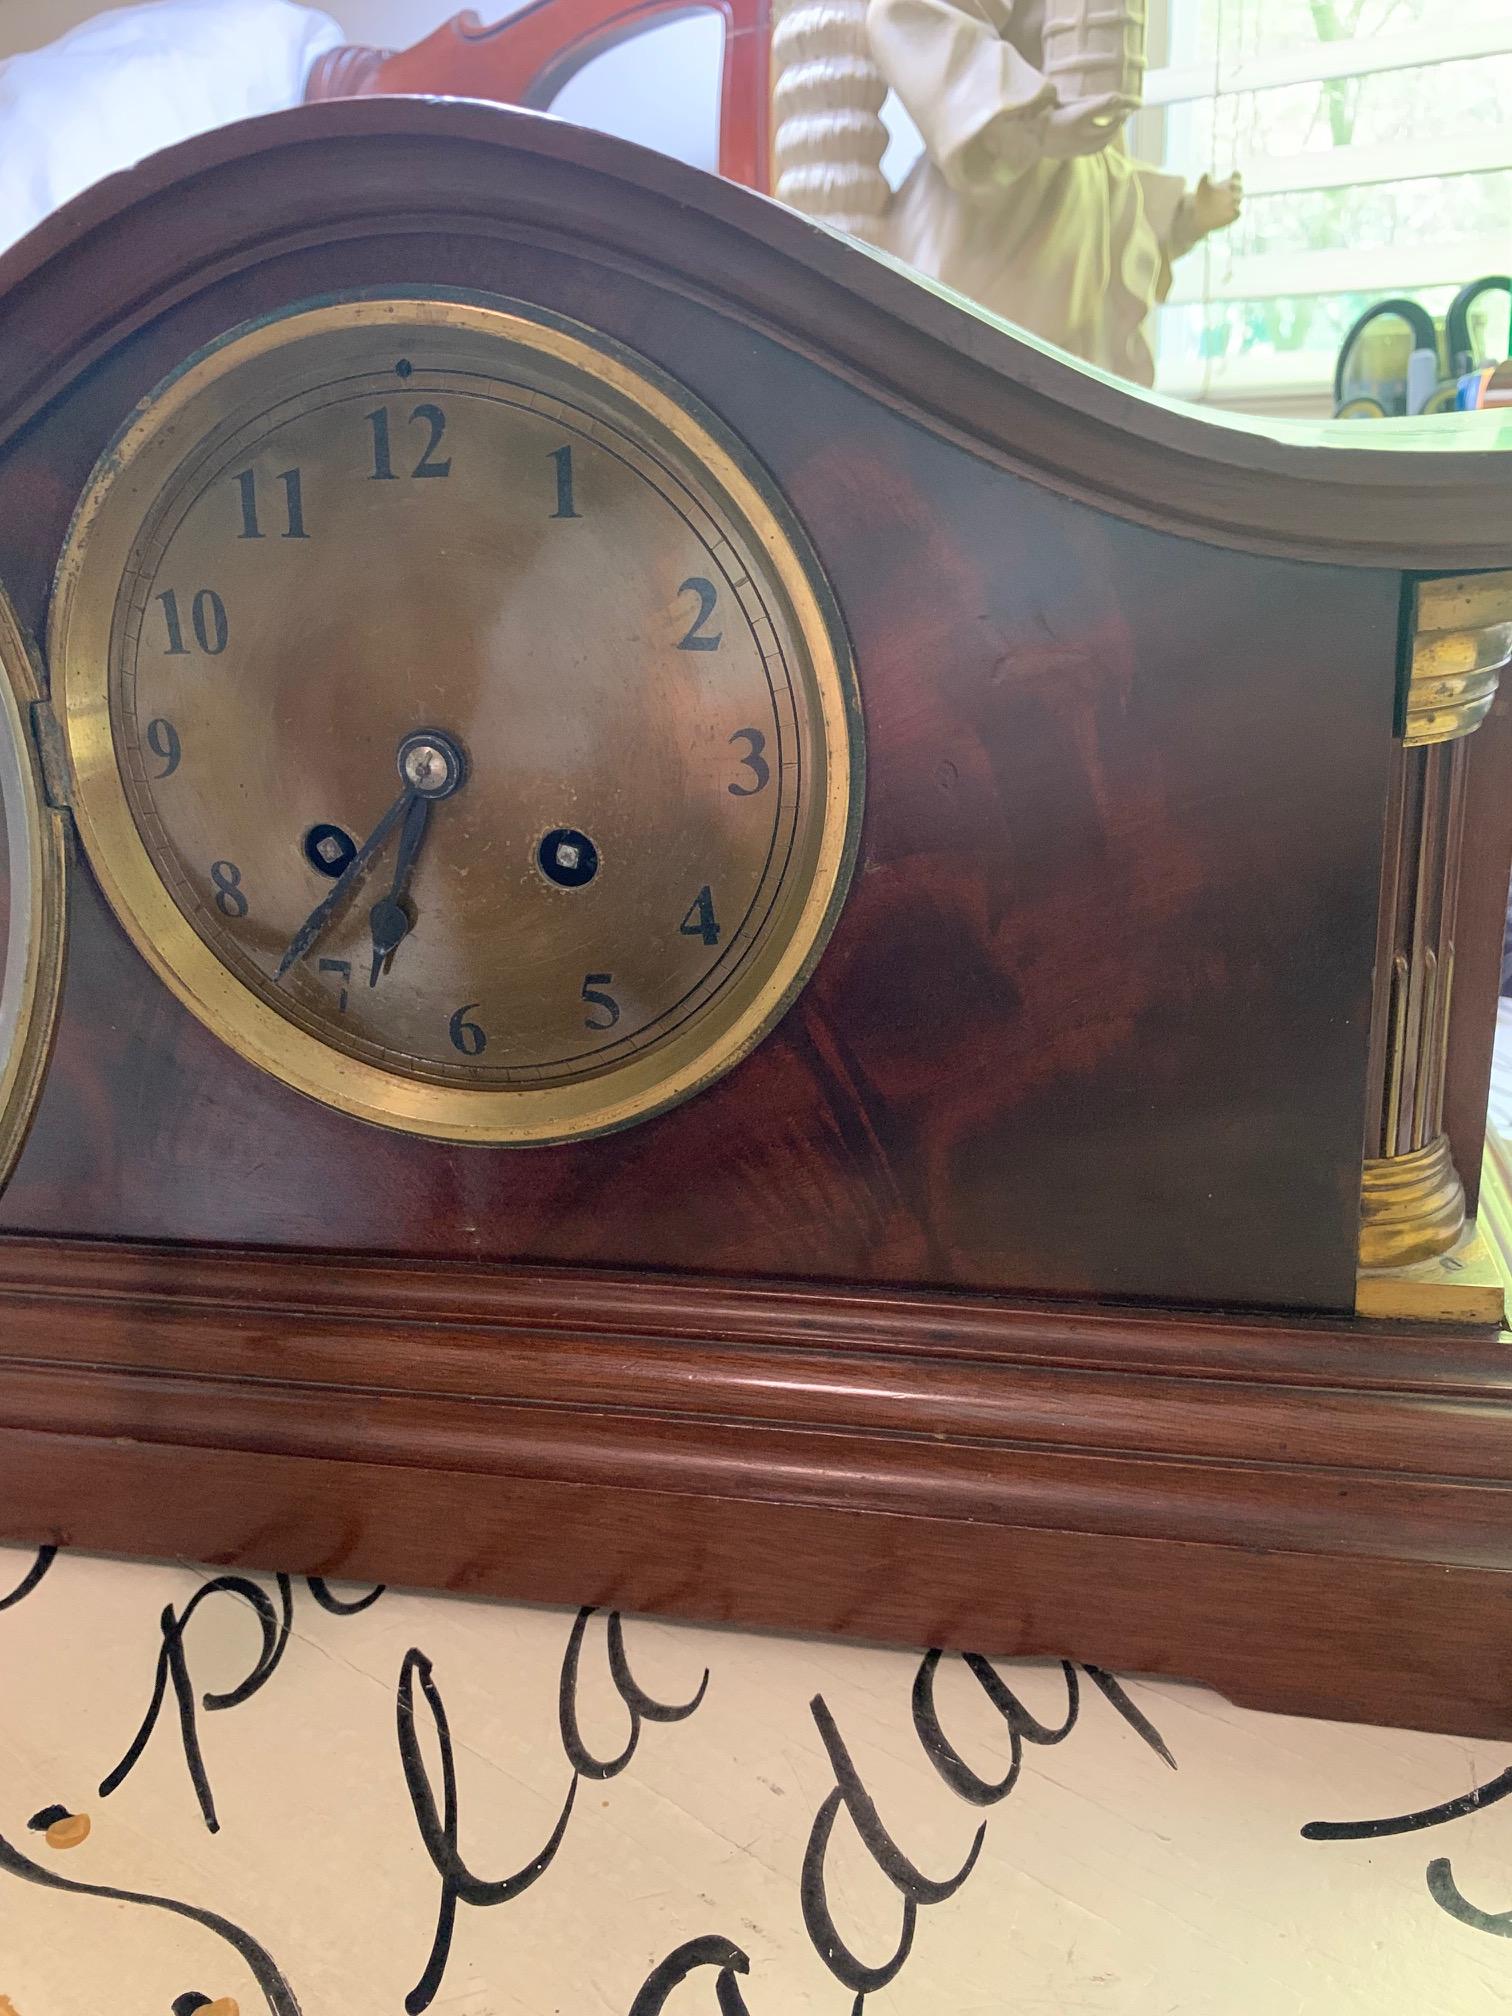 Help with mantle clock - All Things Clocks - Watch Repair Talk